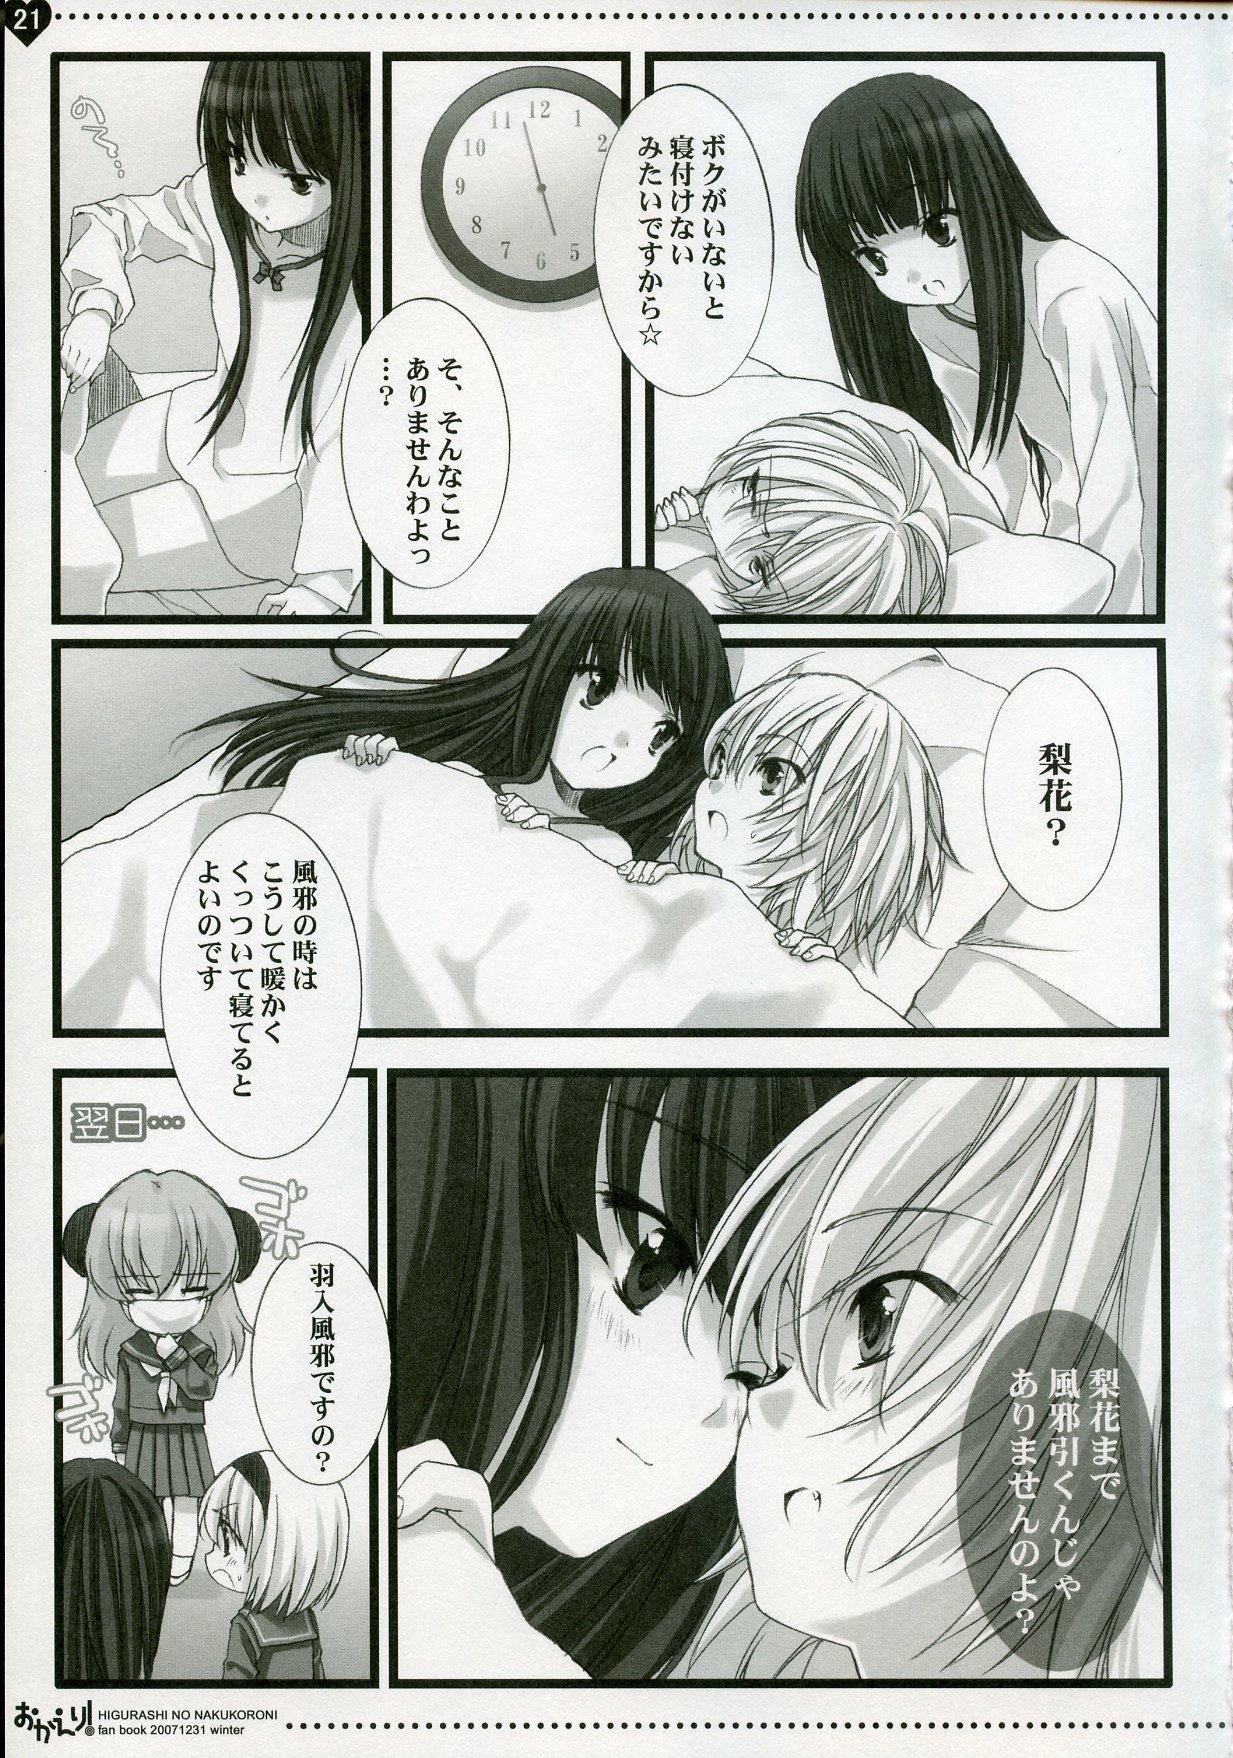 Stripping Okaeri! - Higurashi no naku koro ni Animated - Page 20